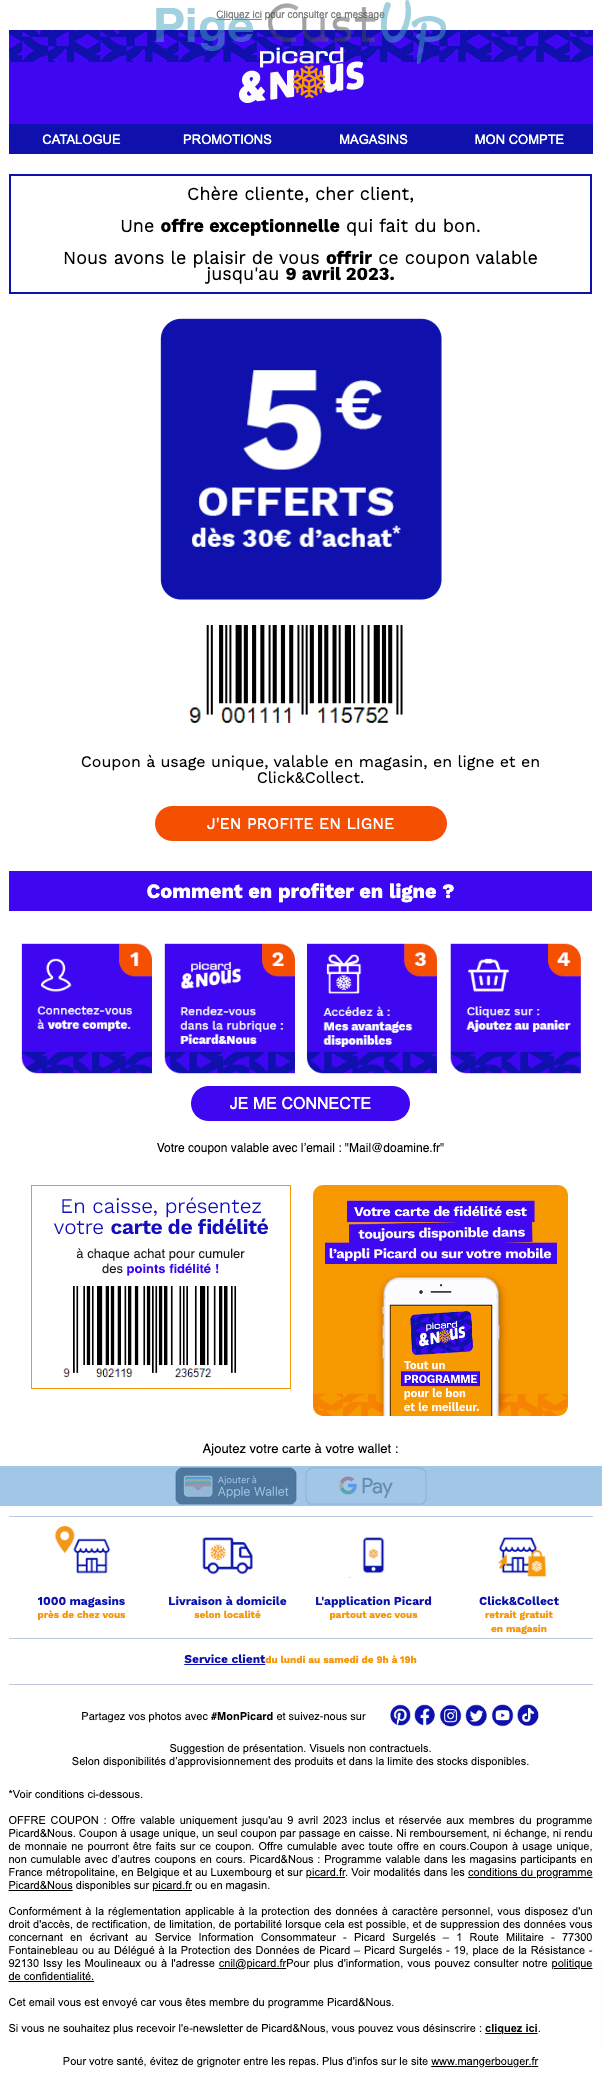 Exemple de Type de media  e-mailing - Picard - Marketing Acquisition - Ventes flash, soldes, demarque, promo, réduction